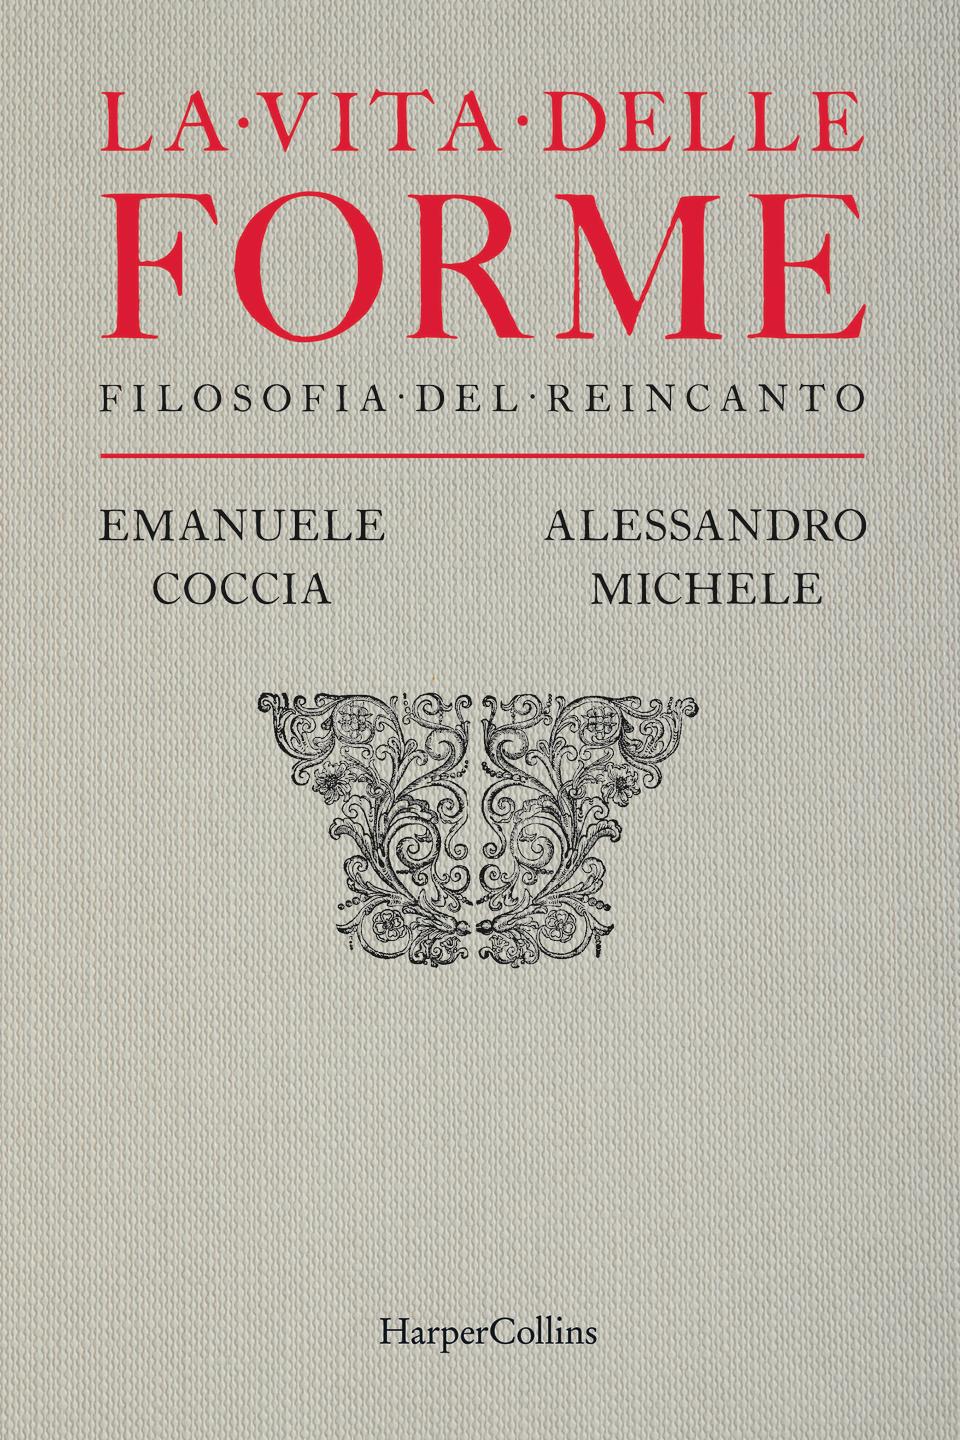 The cover of “La Vita delle Forme.”